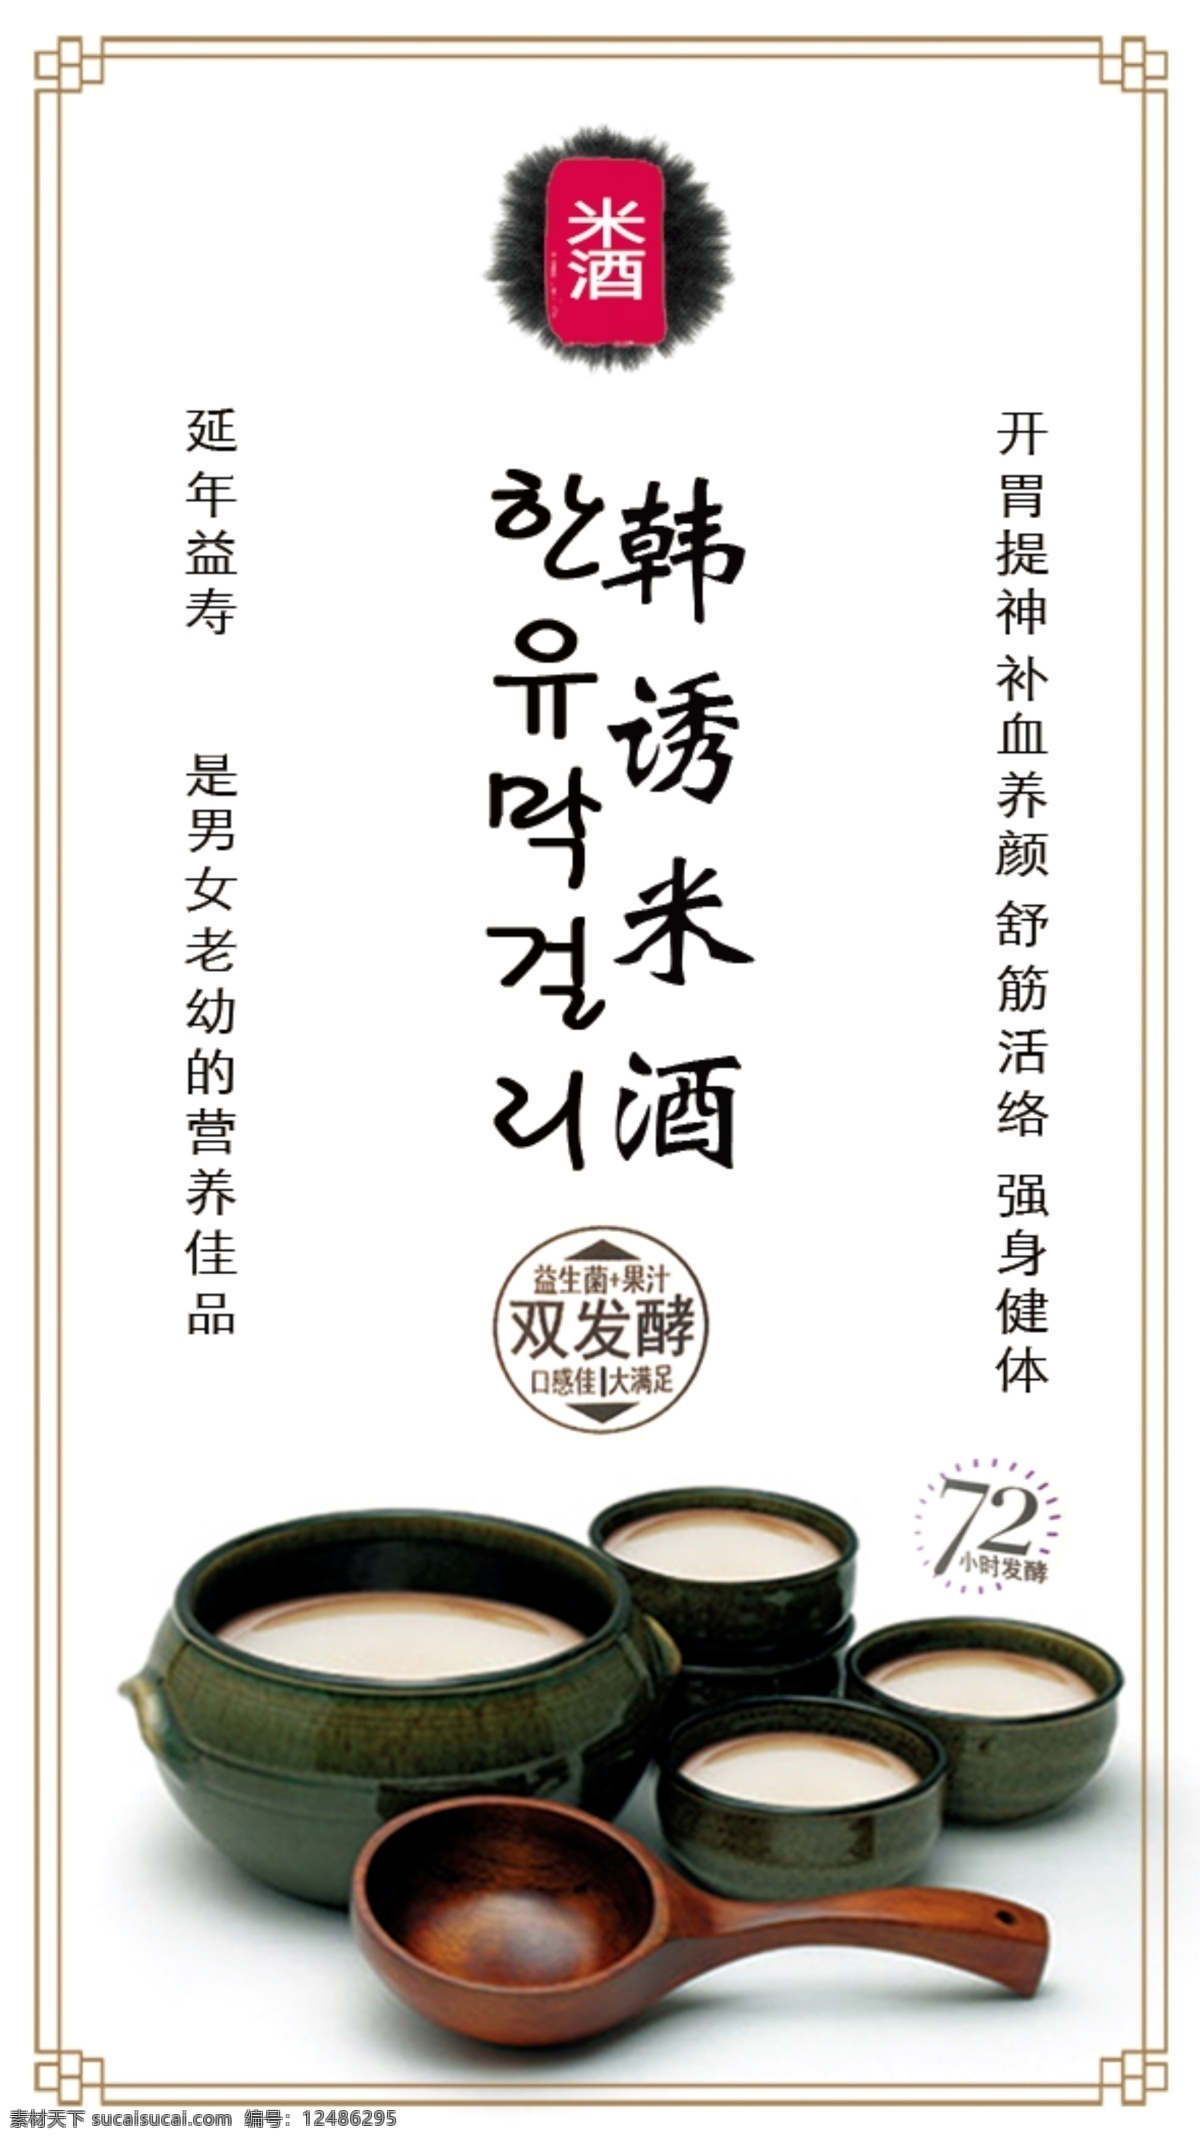 延边米酒 大米米酒 特色米酒 朝鲜族米酒 米酒商标 米酒制作 米酒图片 jinguangsheji 分层